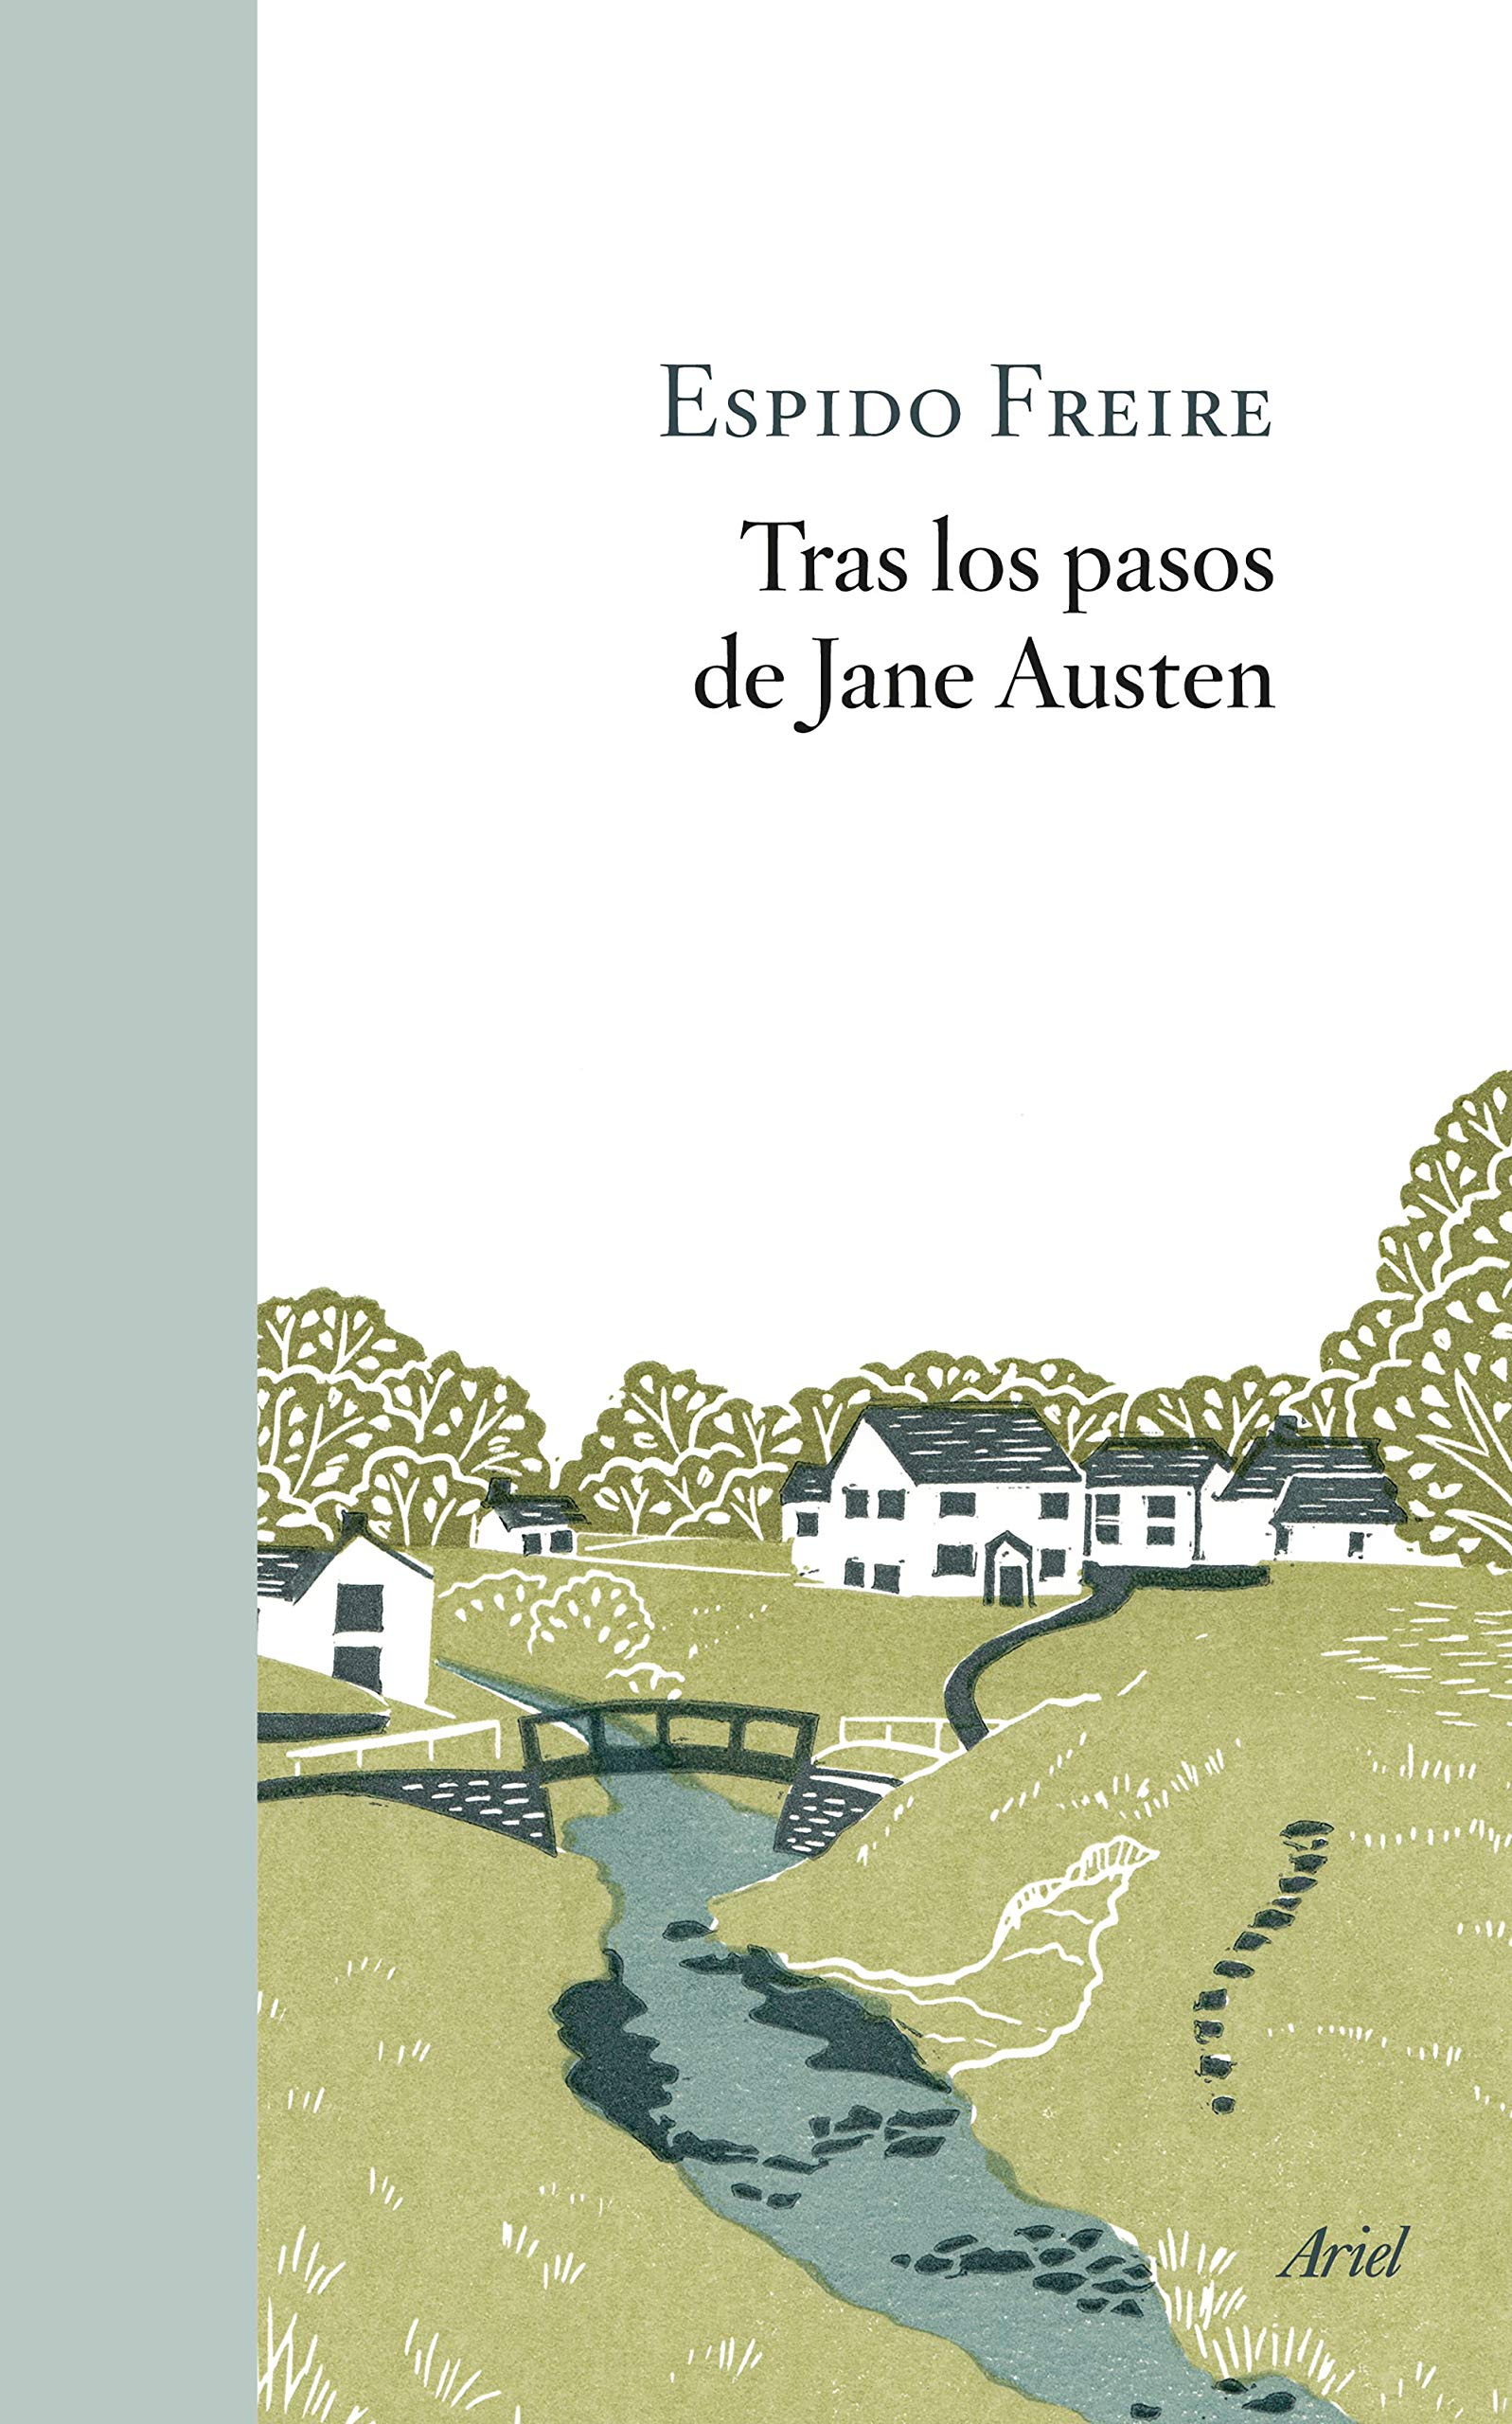 Zenda recomienda: Tras los pasos de Jane Austen, de Espido Freire